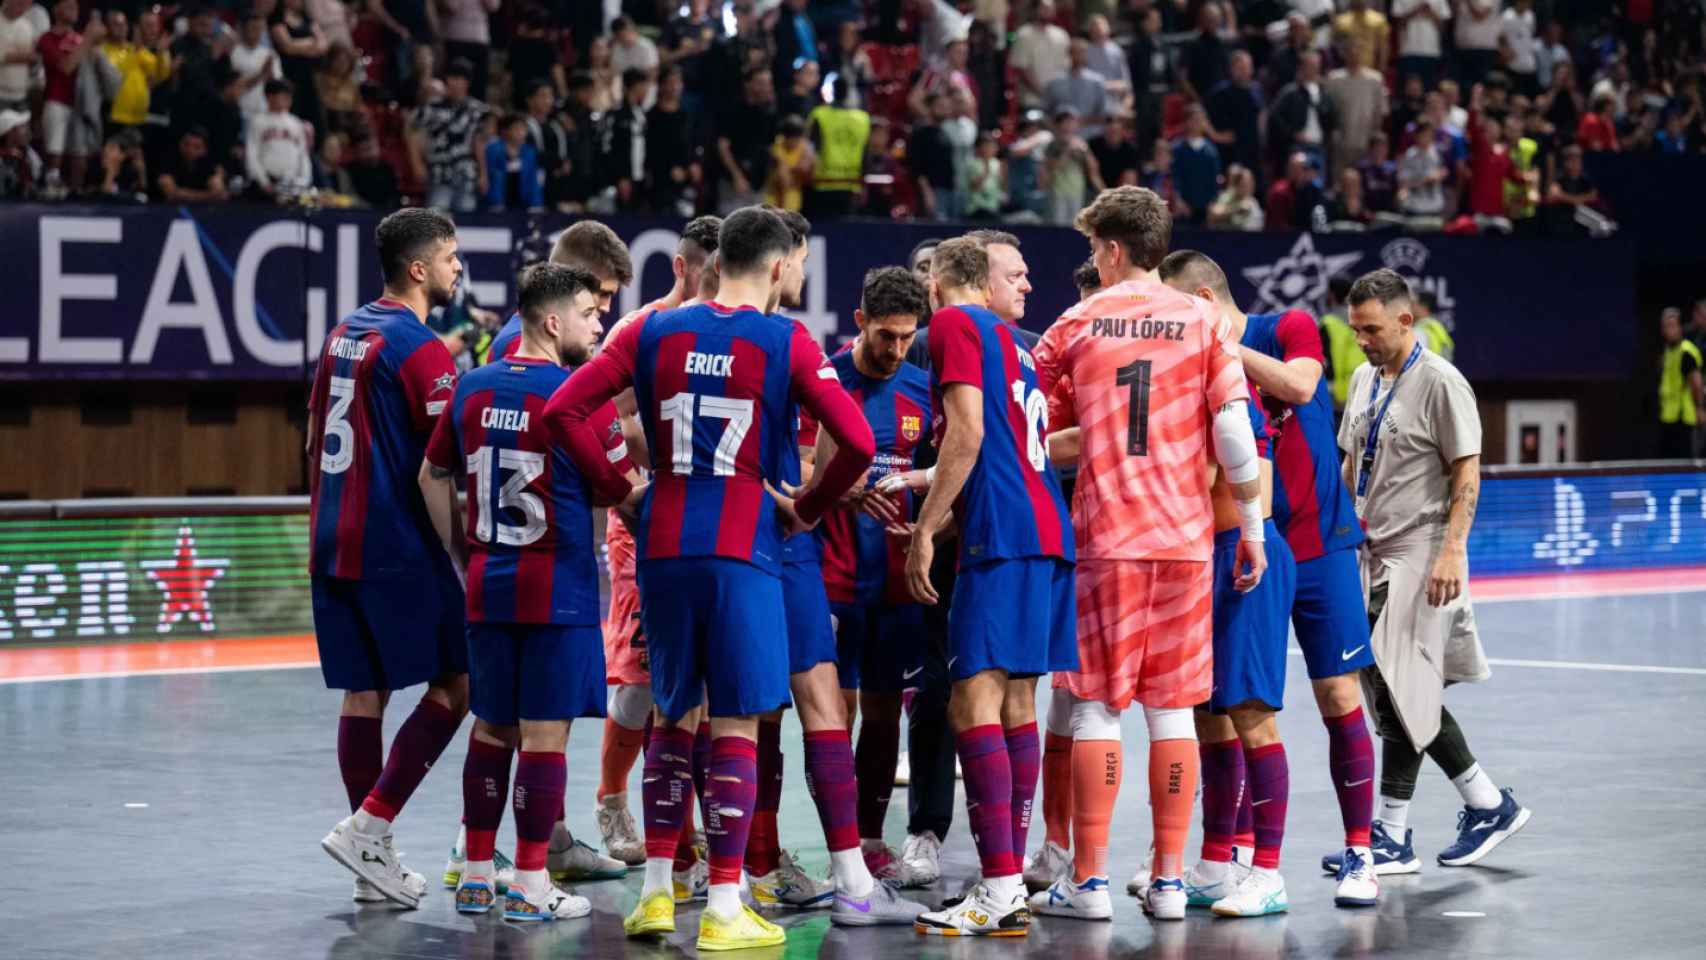 El Barça de fútbol sala hace piña tras perder la final de la Champions contra el Palma Futsal